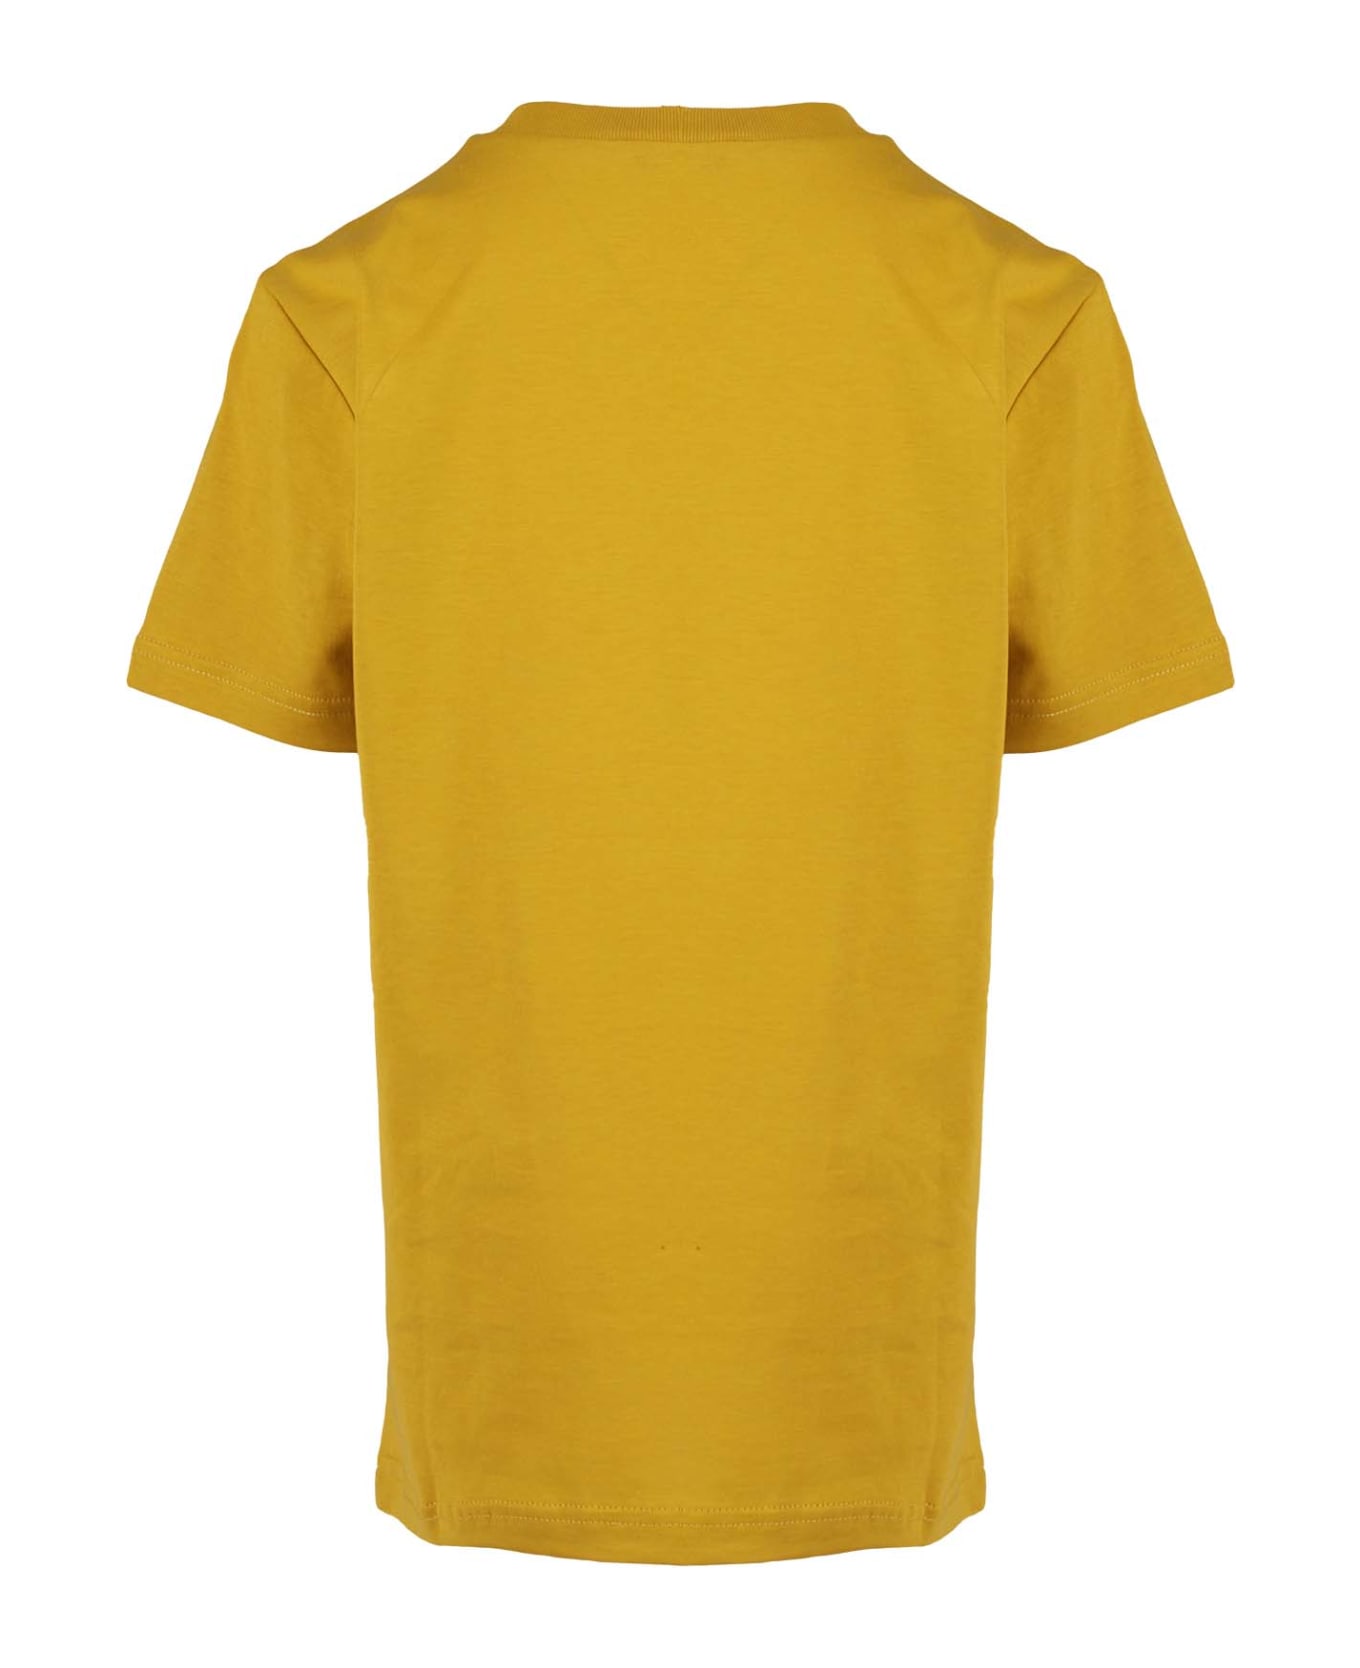 N.21 Maglietta - Mustard Yellow